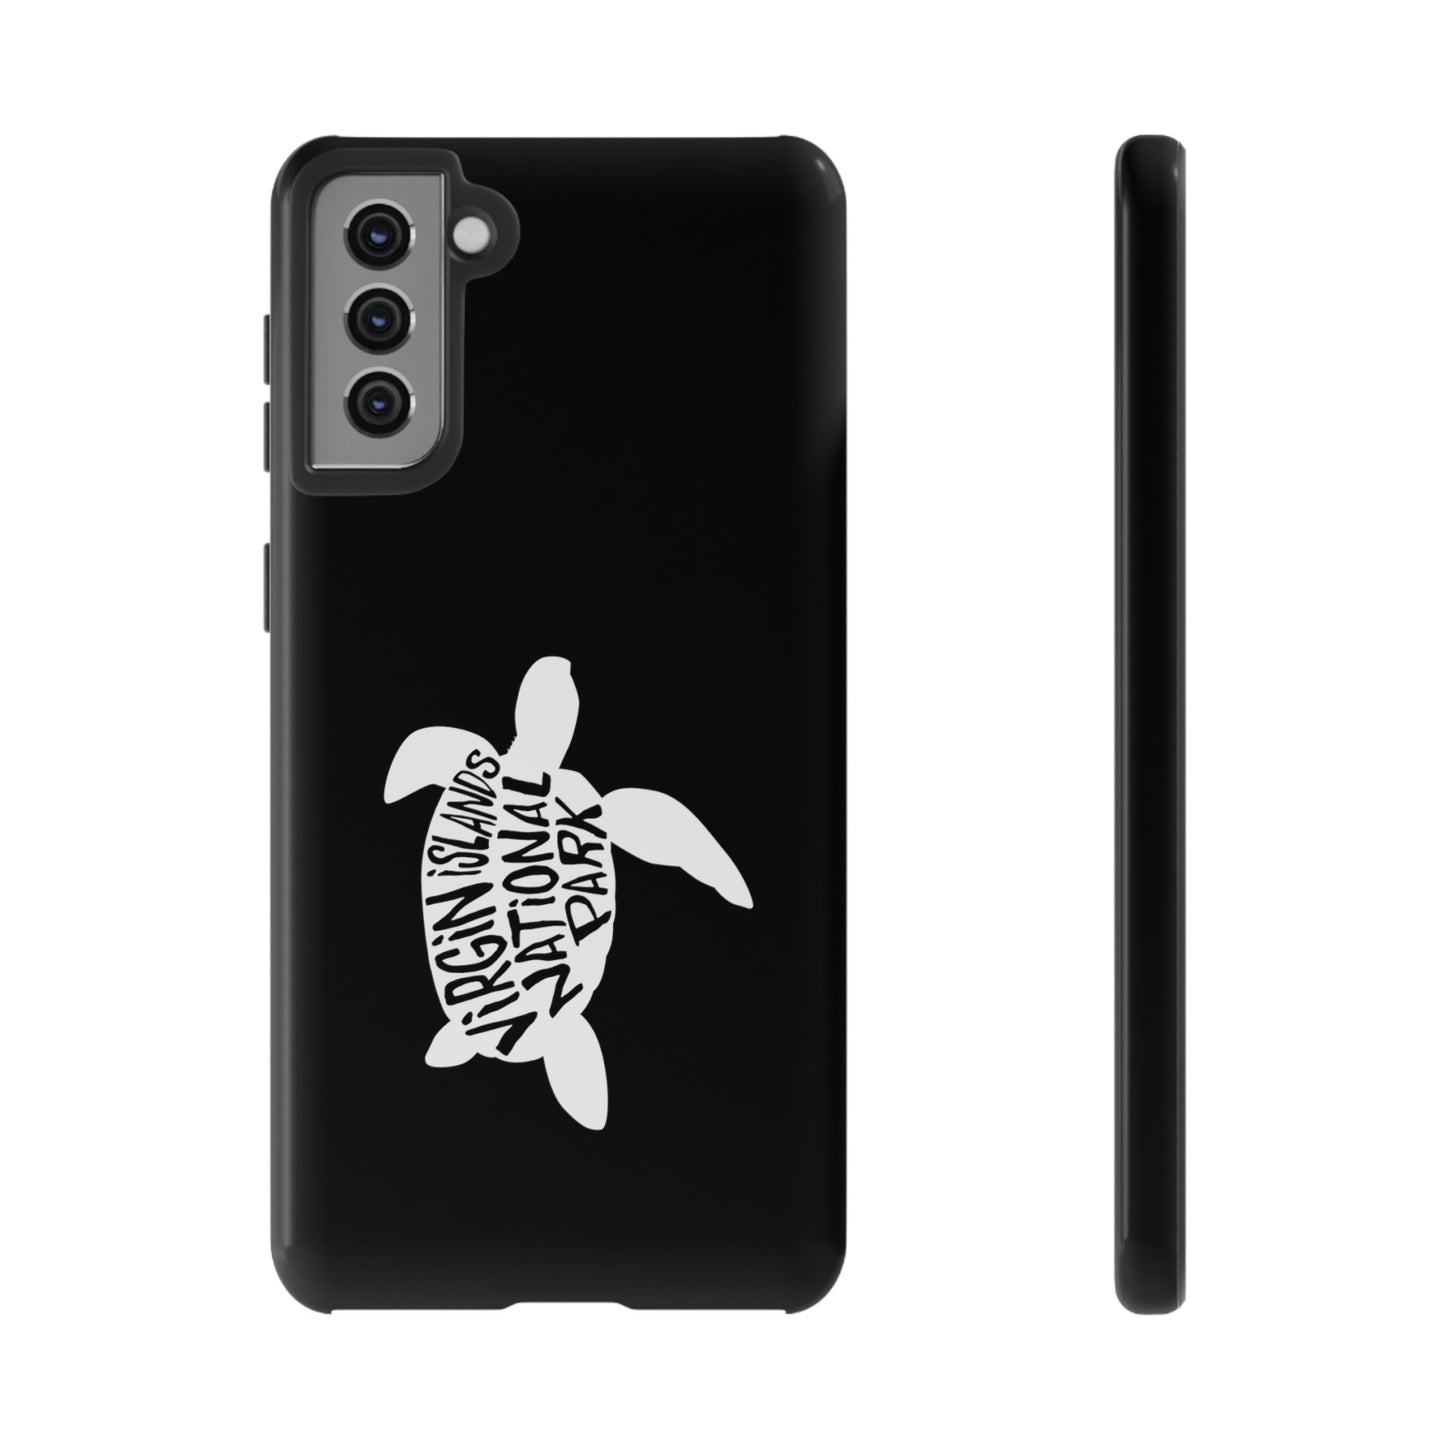 Virgin Islands National Park Phone Case - Turtle Design